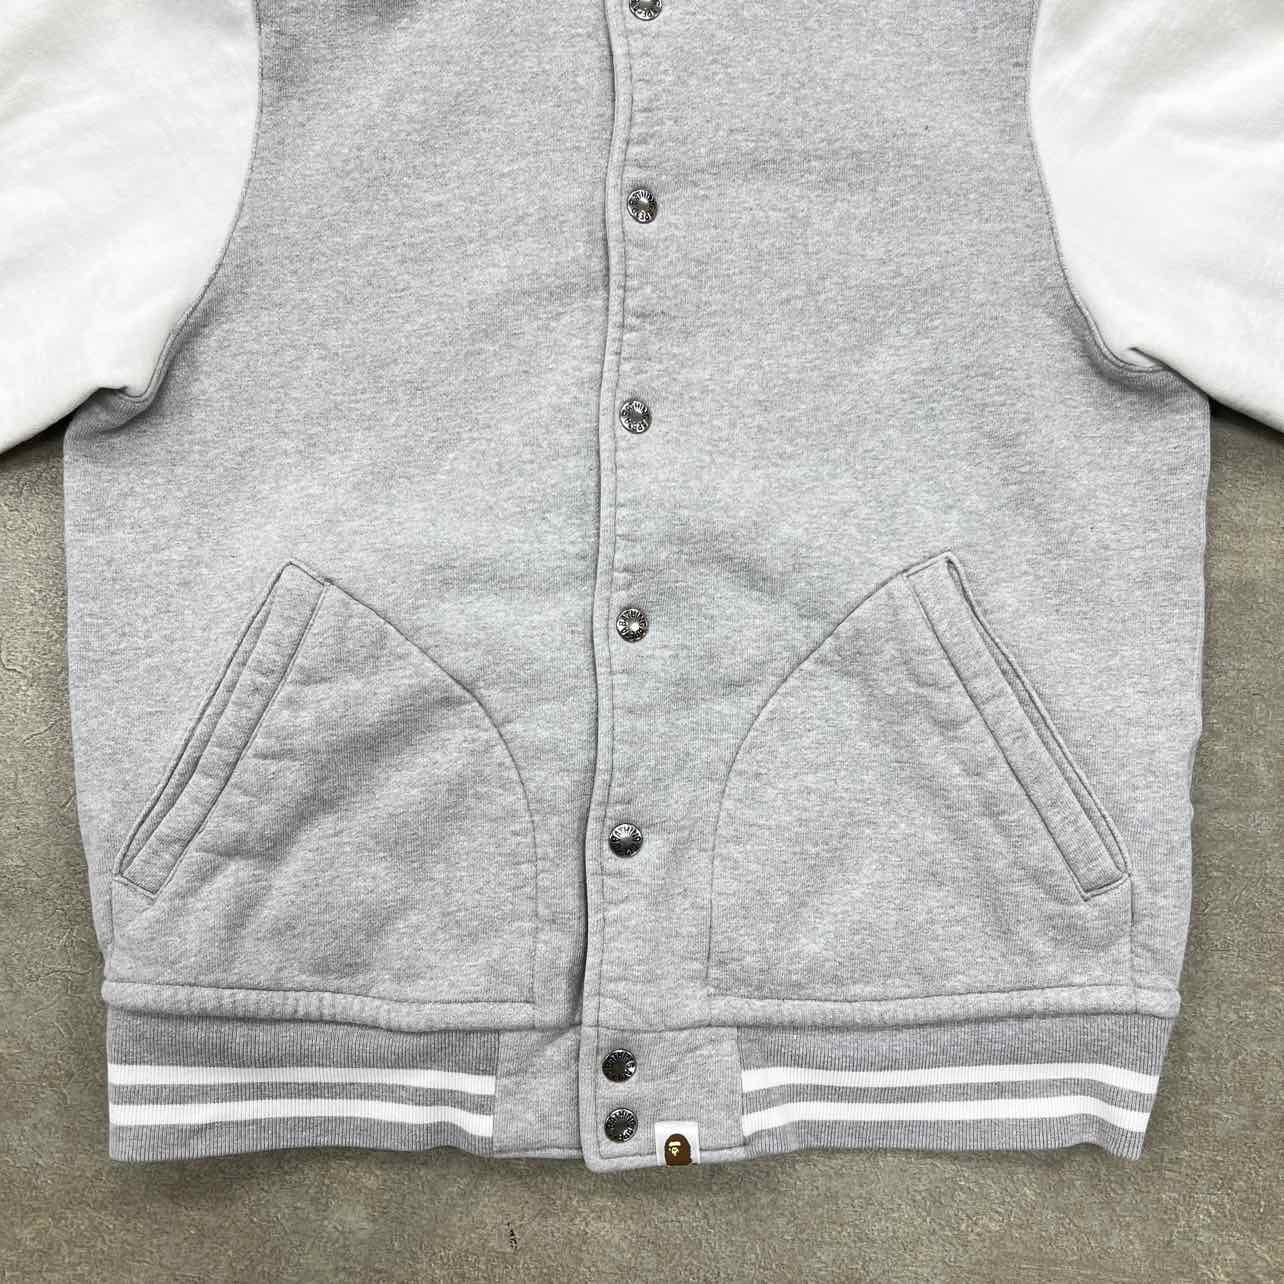 Bape Varsity Jacket "TIGER" Grey Used Size M